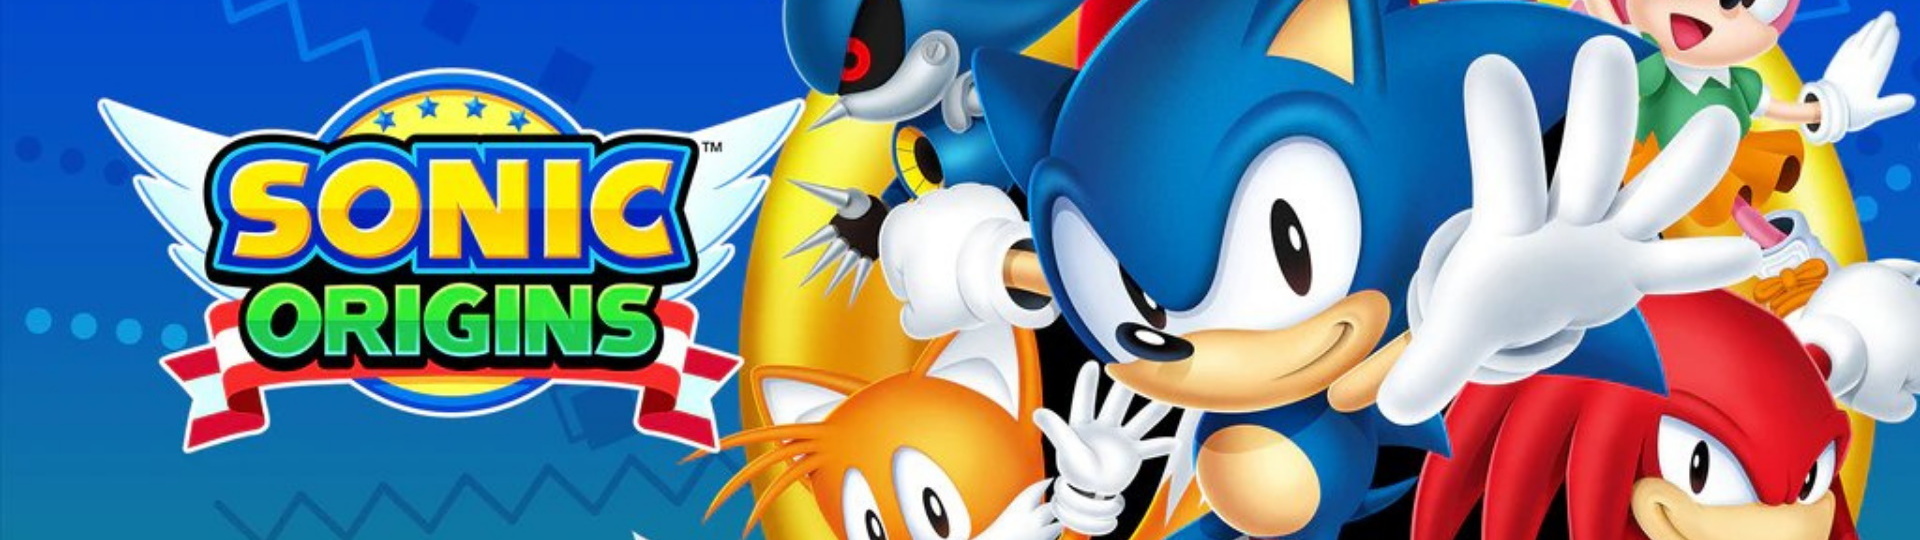 Kolekce Sonic Origins ohodnocena a zřejmě brzy dorazí | Novinky